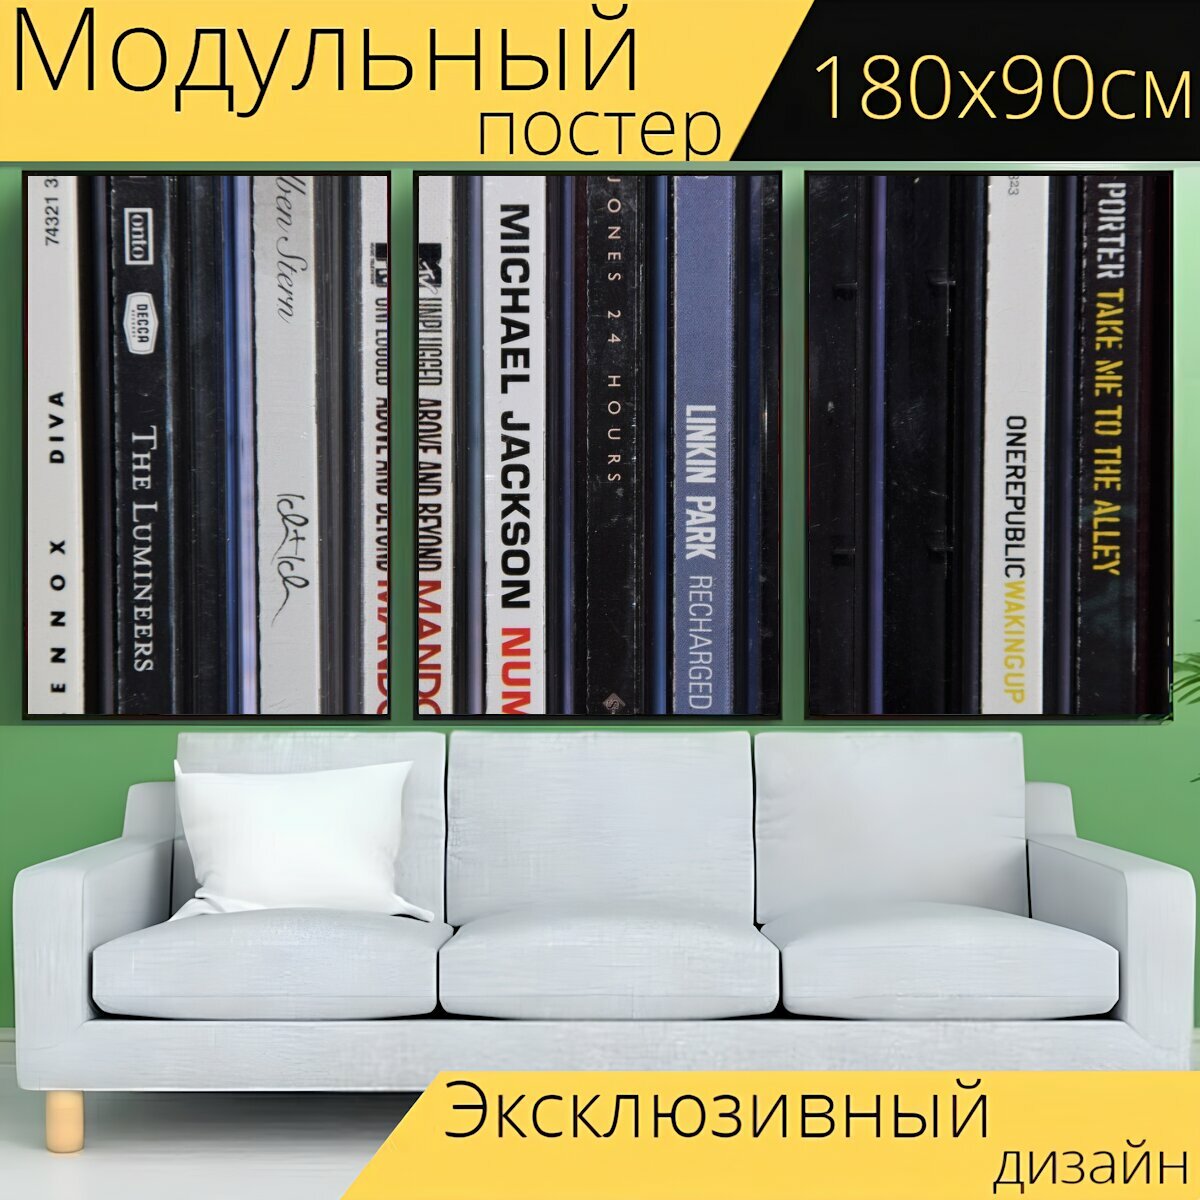 Модульный постер "Компакт диск, коллекция, музыка" 180 x 90 см. для интерьера